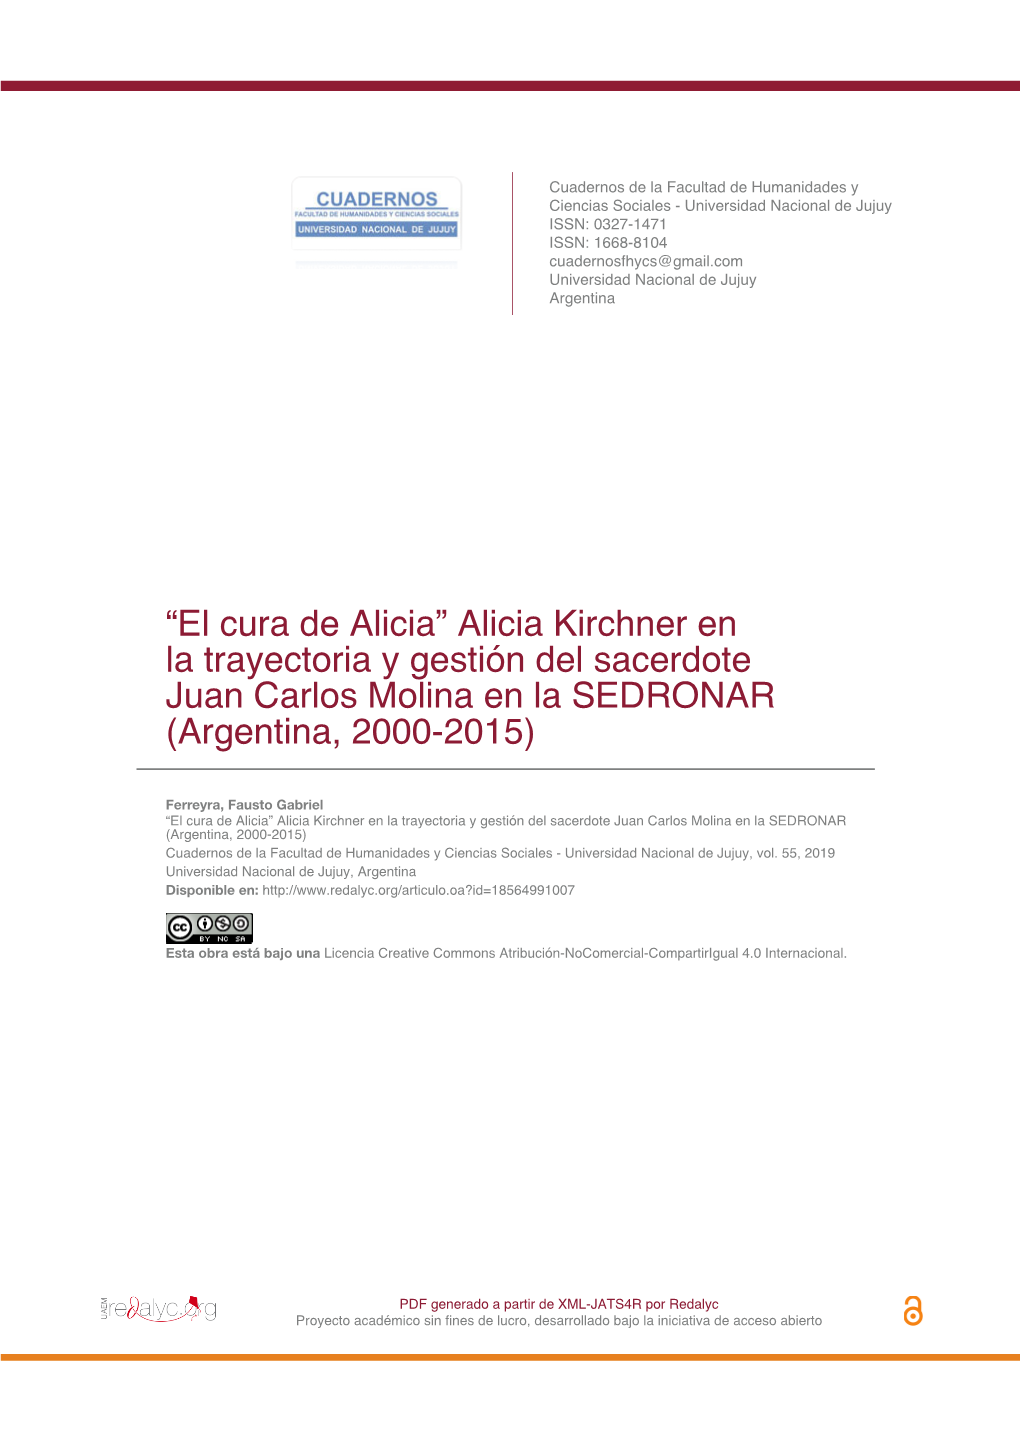 Alicia Kirchner En La Trayectoria Y Gestión Del Sacerdote Juan Carlos Molina En La SEDRONAR (Argentina, 2000-2015)